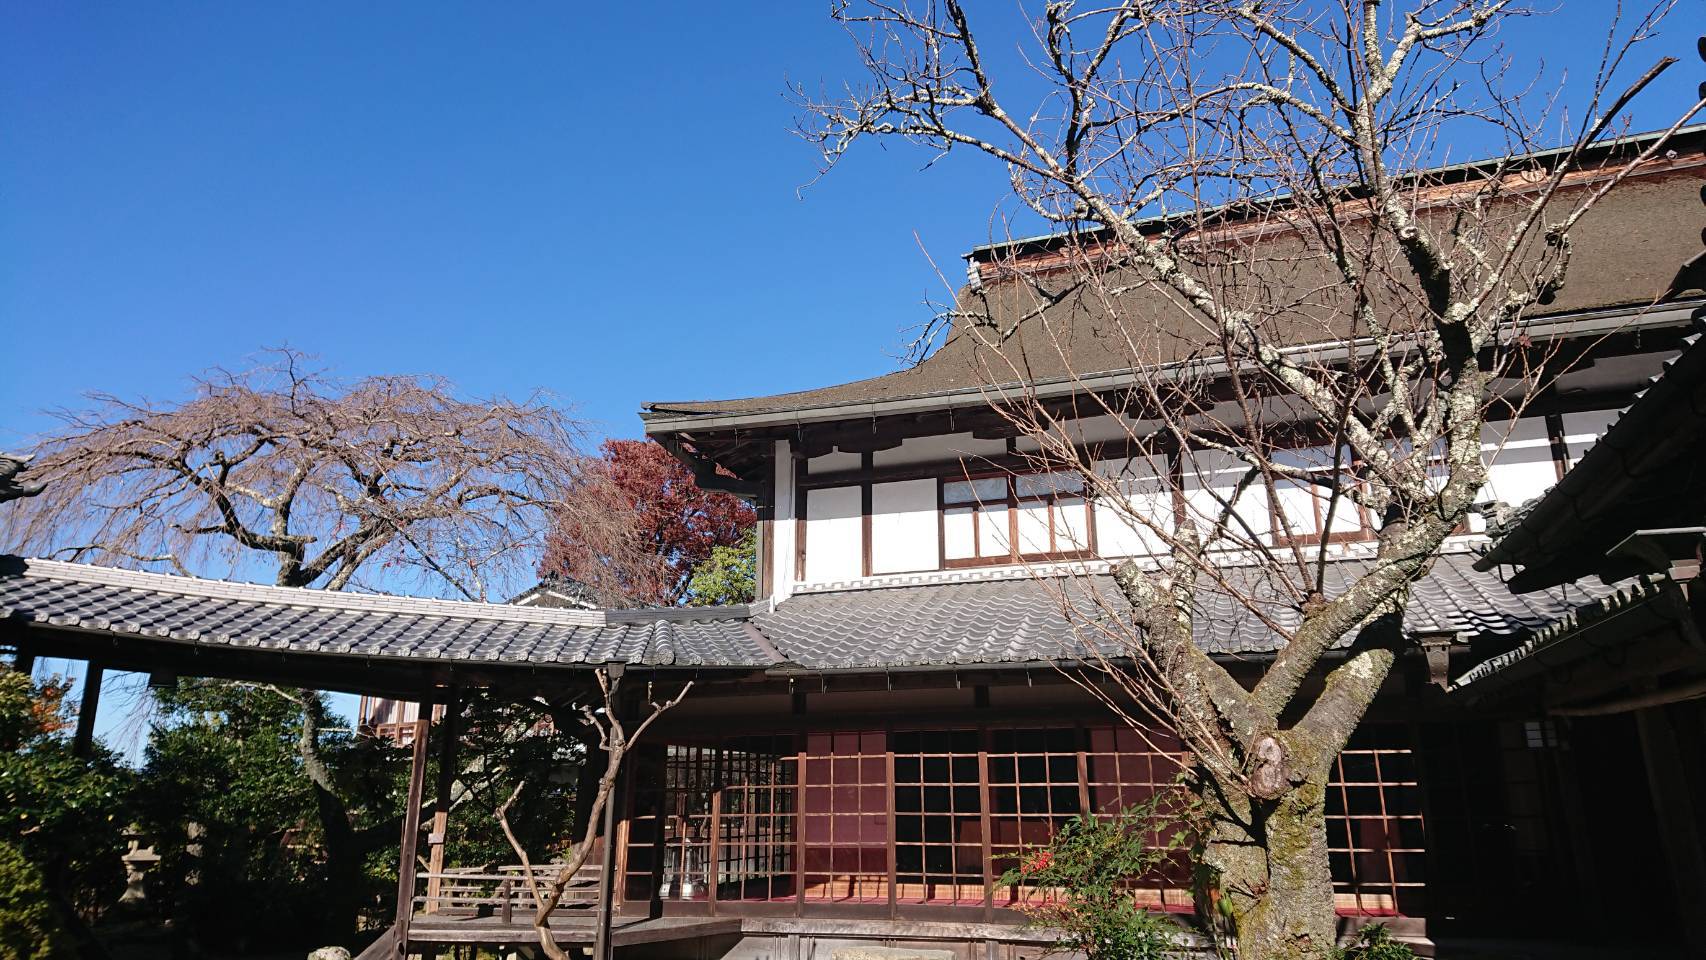 吉野山で花見と神社巡り。アクセス便利な宿